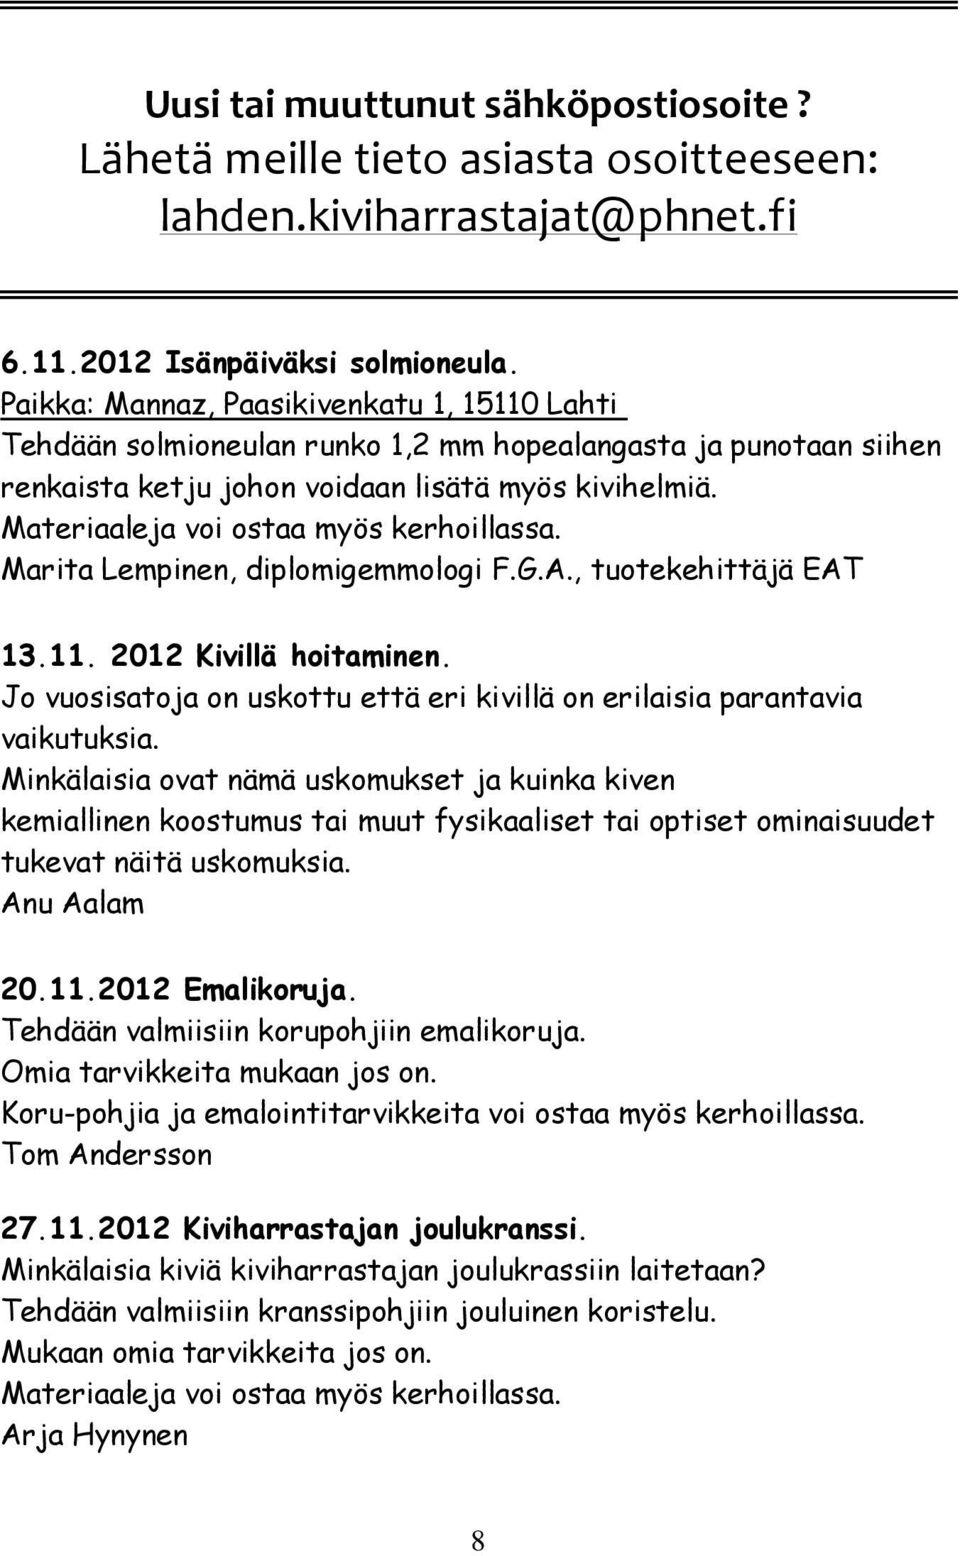 Materiaaleja voi ostaa myös kerhoillassa. Marita Lempinen, diplomigemmologi F.G.A., tuotekehittäjä EAT 13.11. 2012 Kivillä hoitaminen.